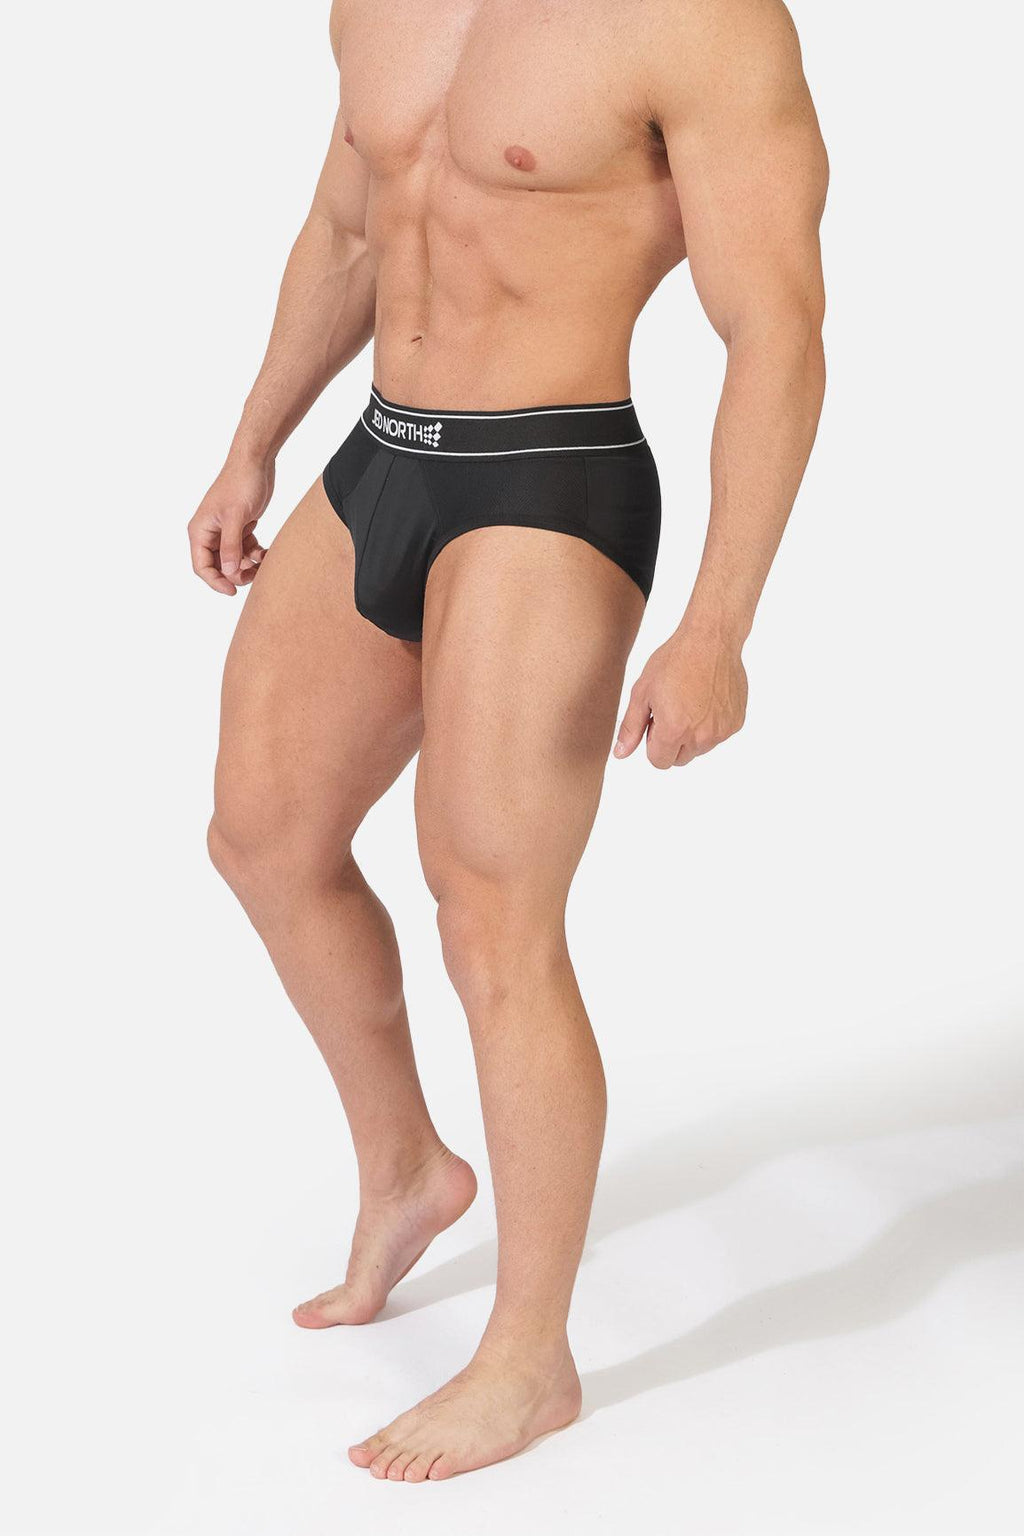 Performance Underwear for Men, Bodybuilding & Fitness Gym Wear